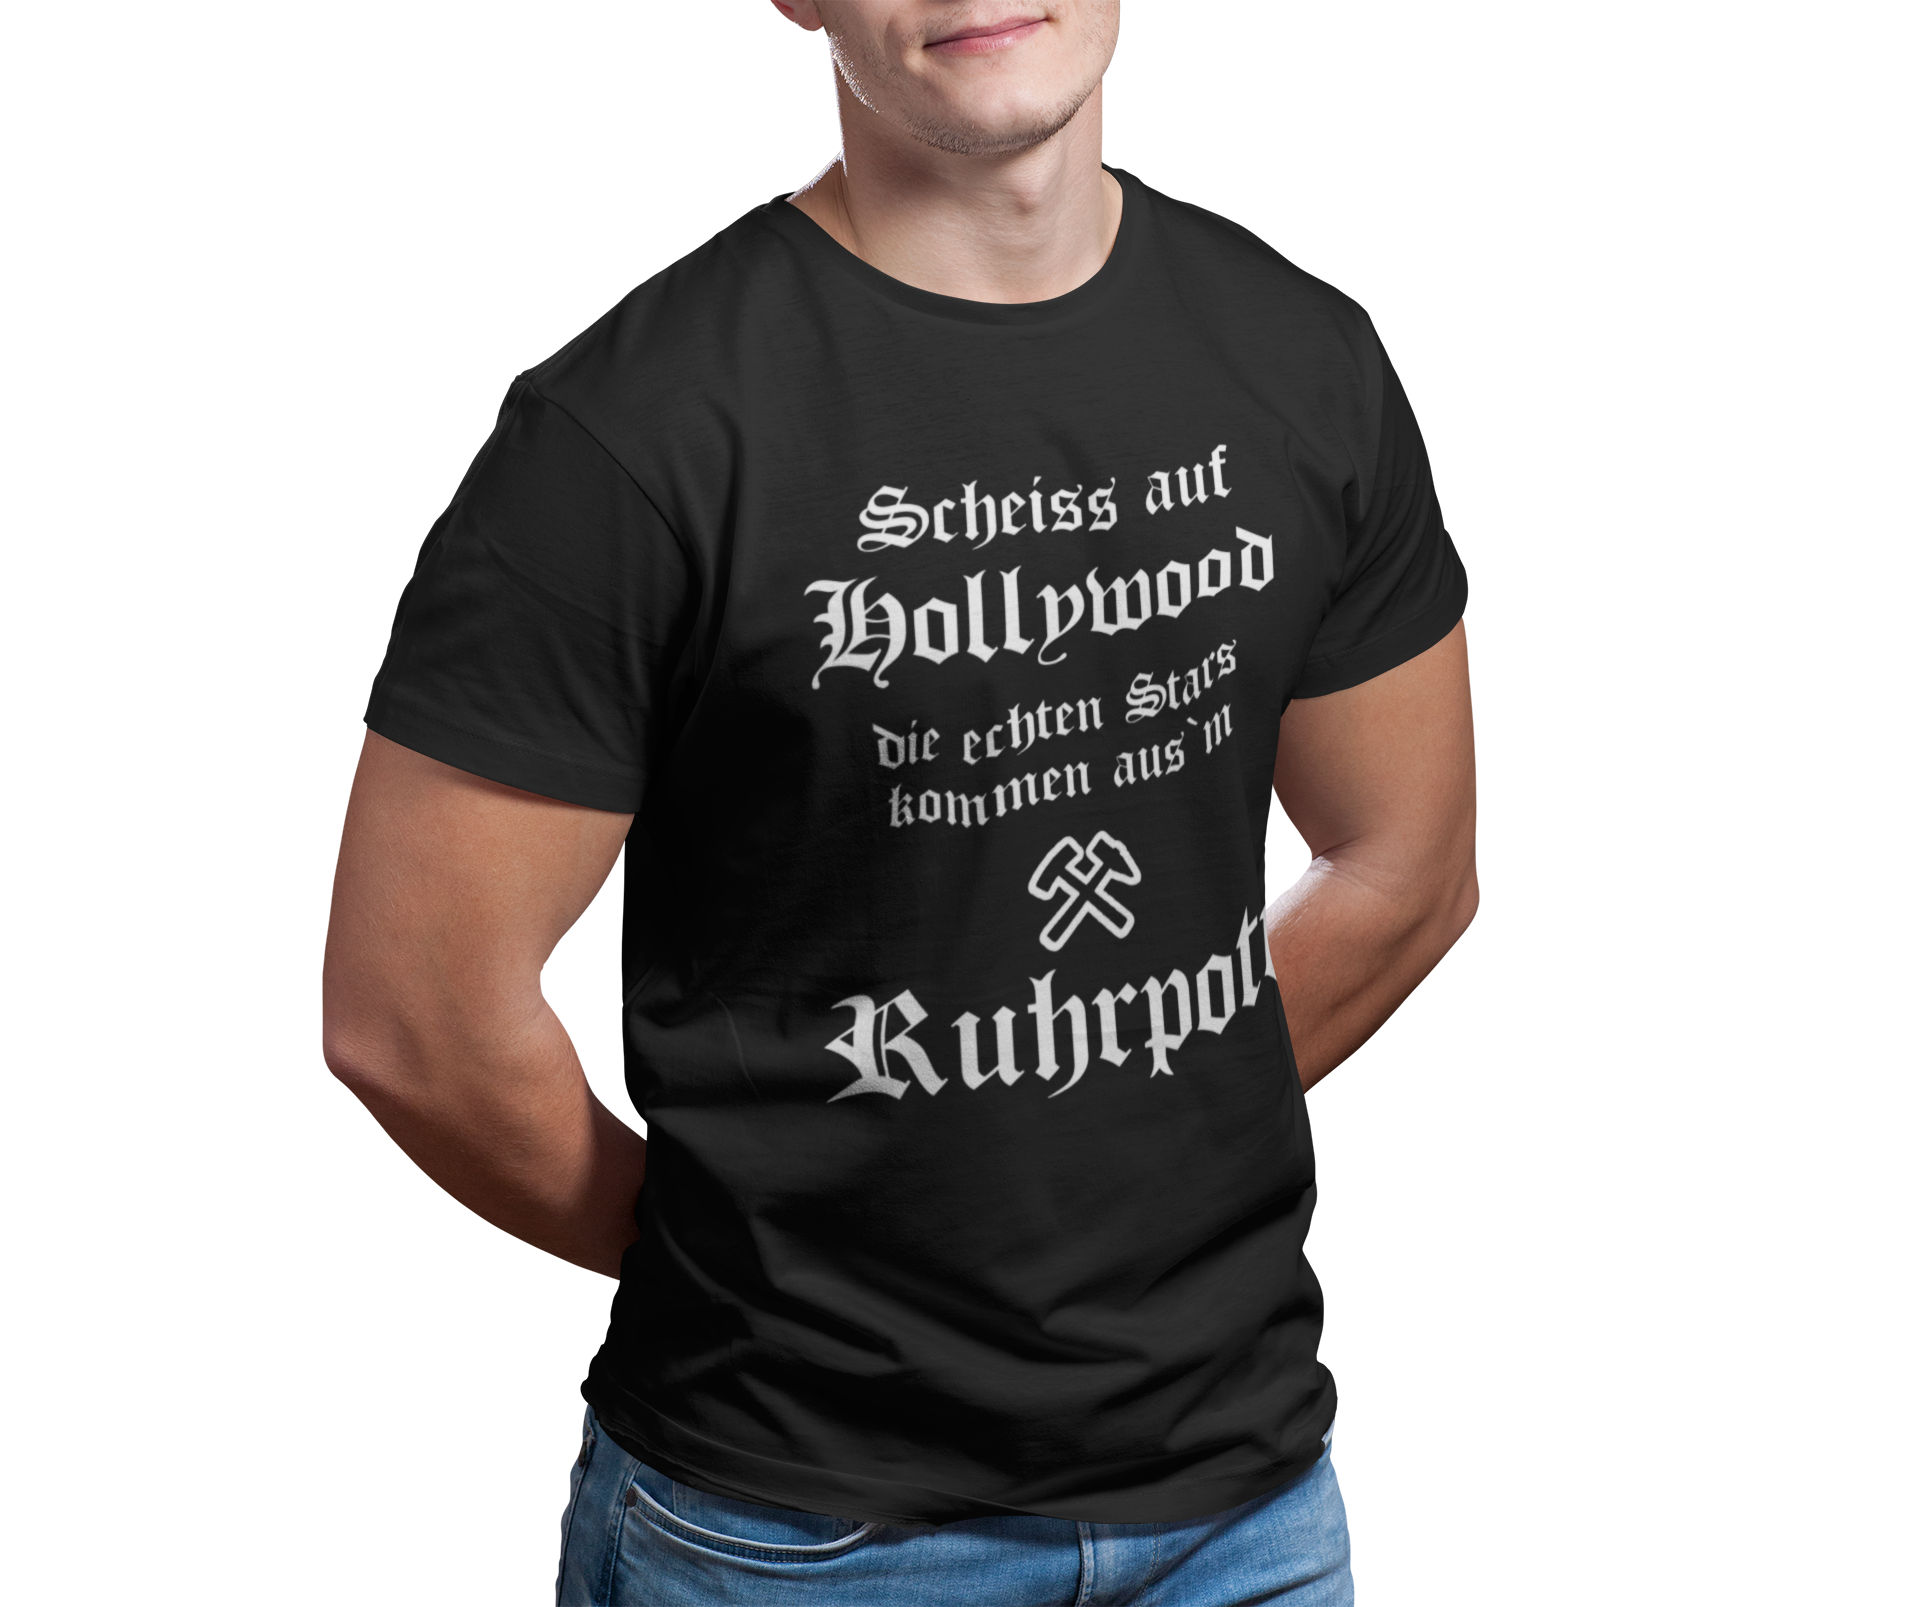 Scheiss auf Hollywood T-Shirt